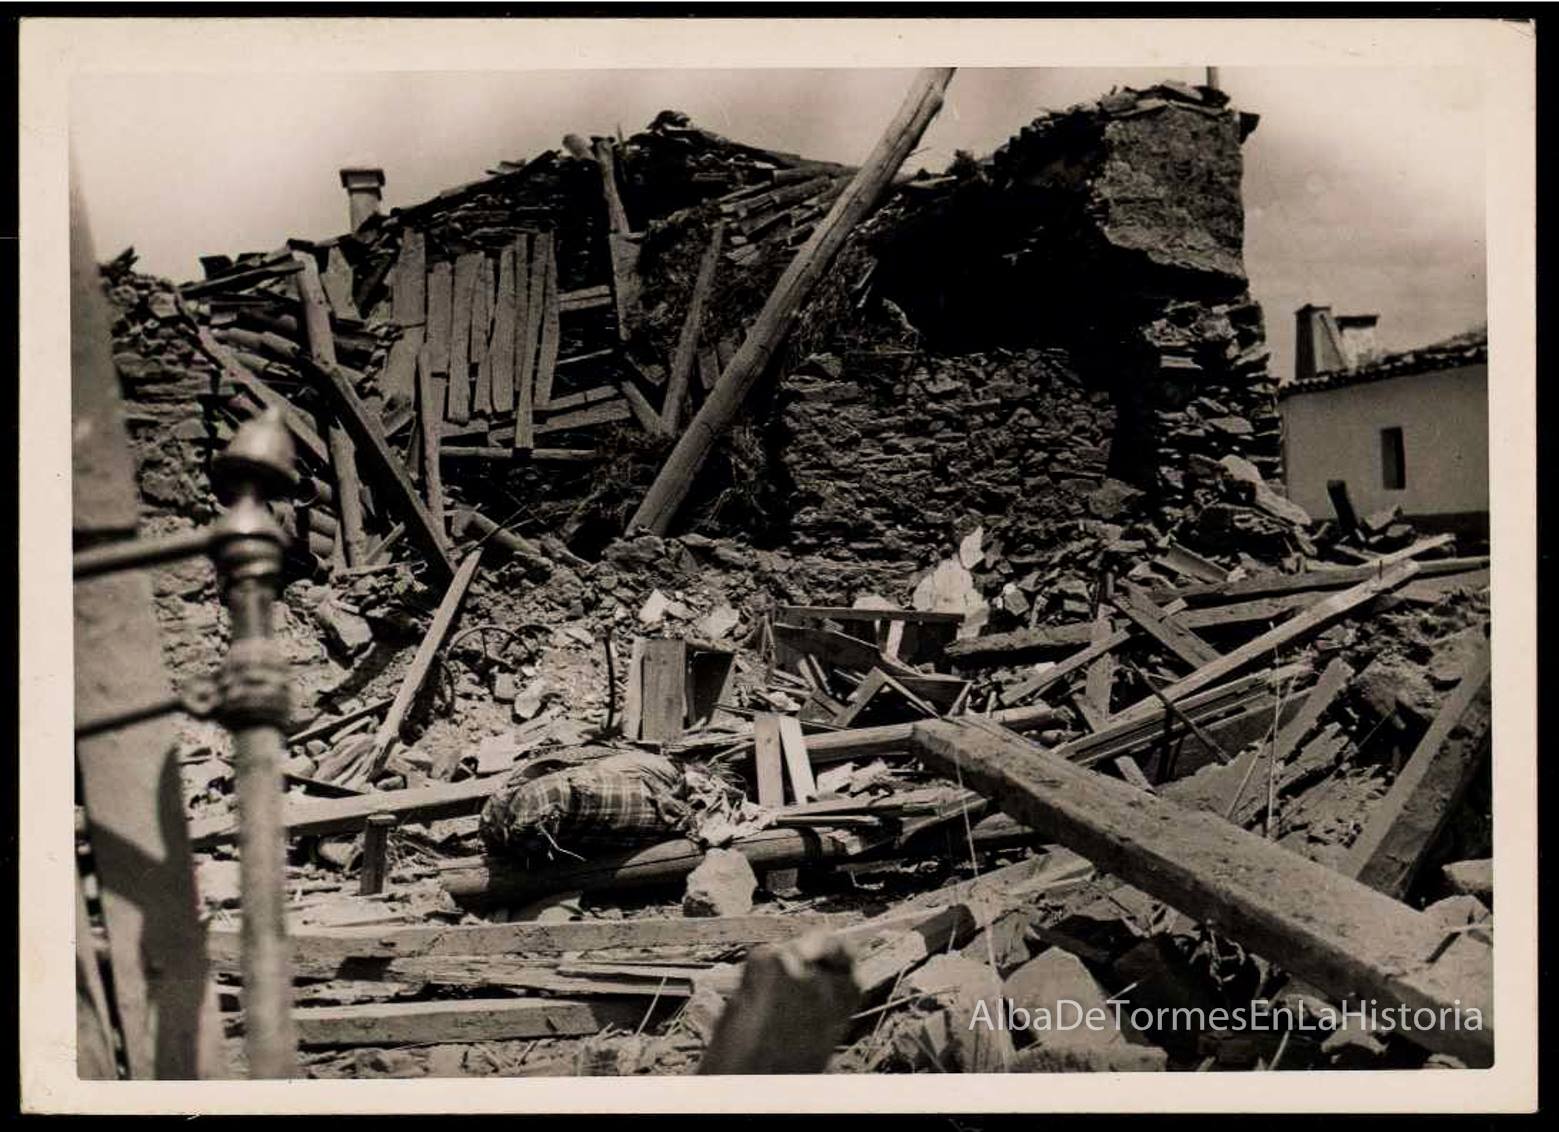 Foto 2 - Víctimas y destrozos causados por el bombardeo del 3 de julio de 1937 en Alba de Tormes